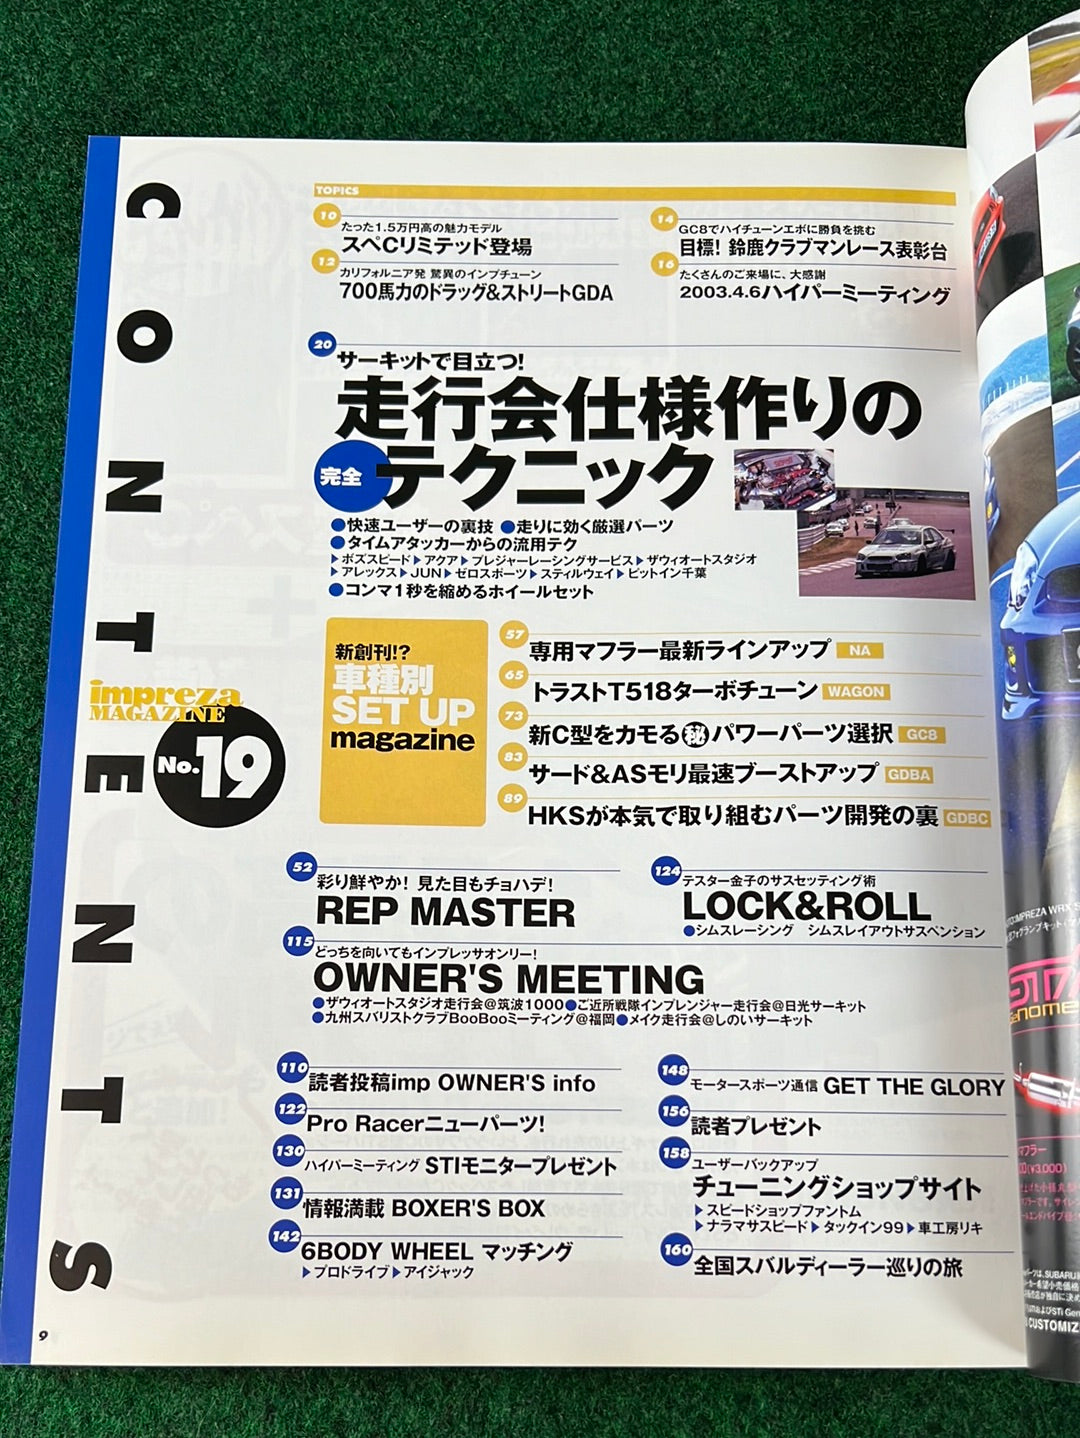 Impreza Magazine by Hyper Rev - No. 19